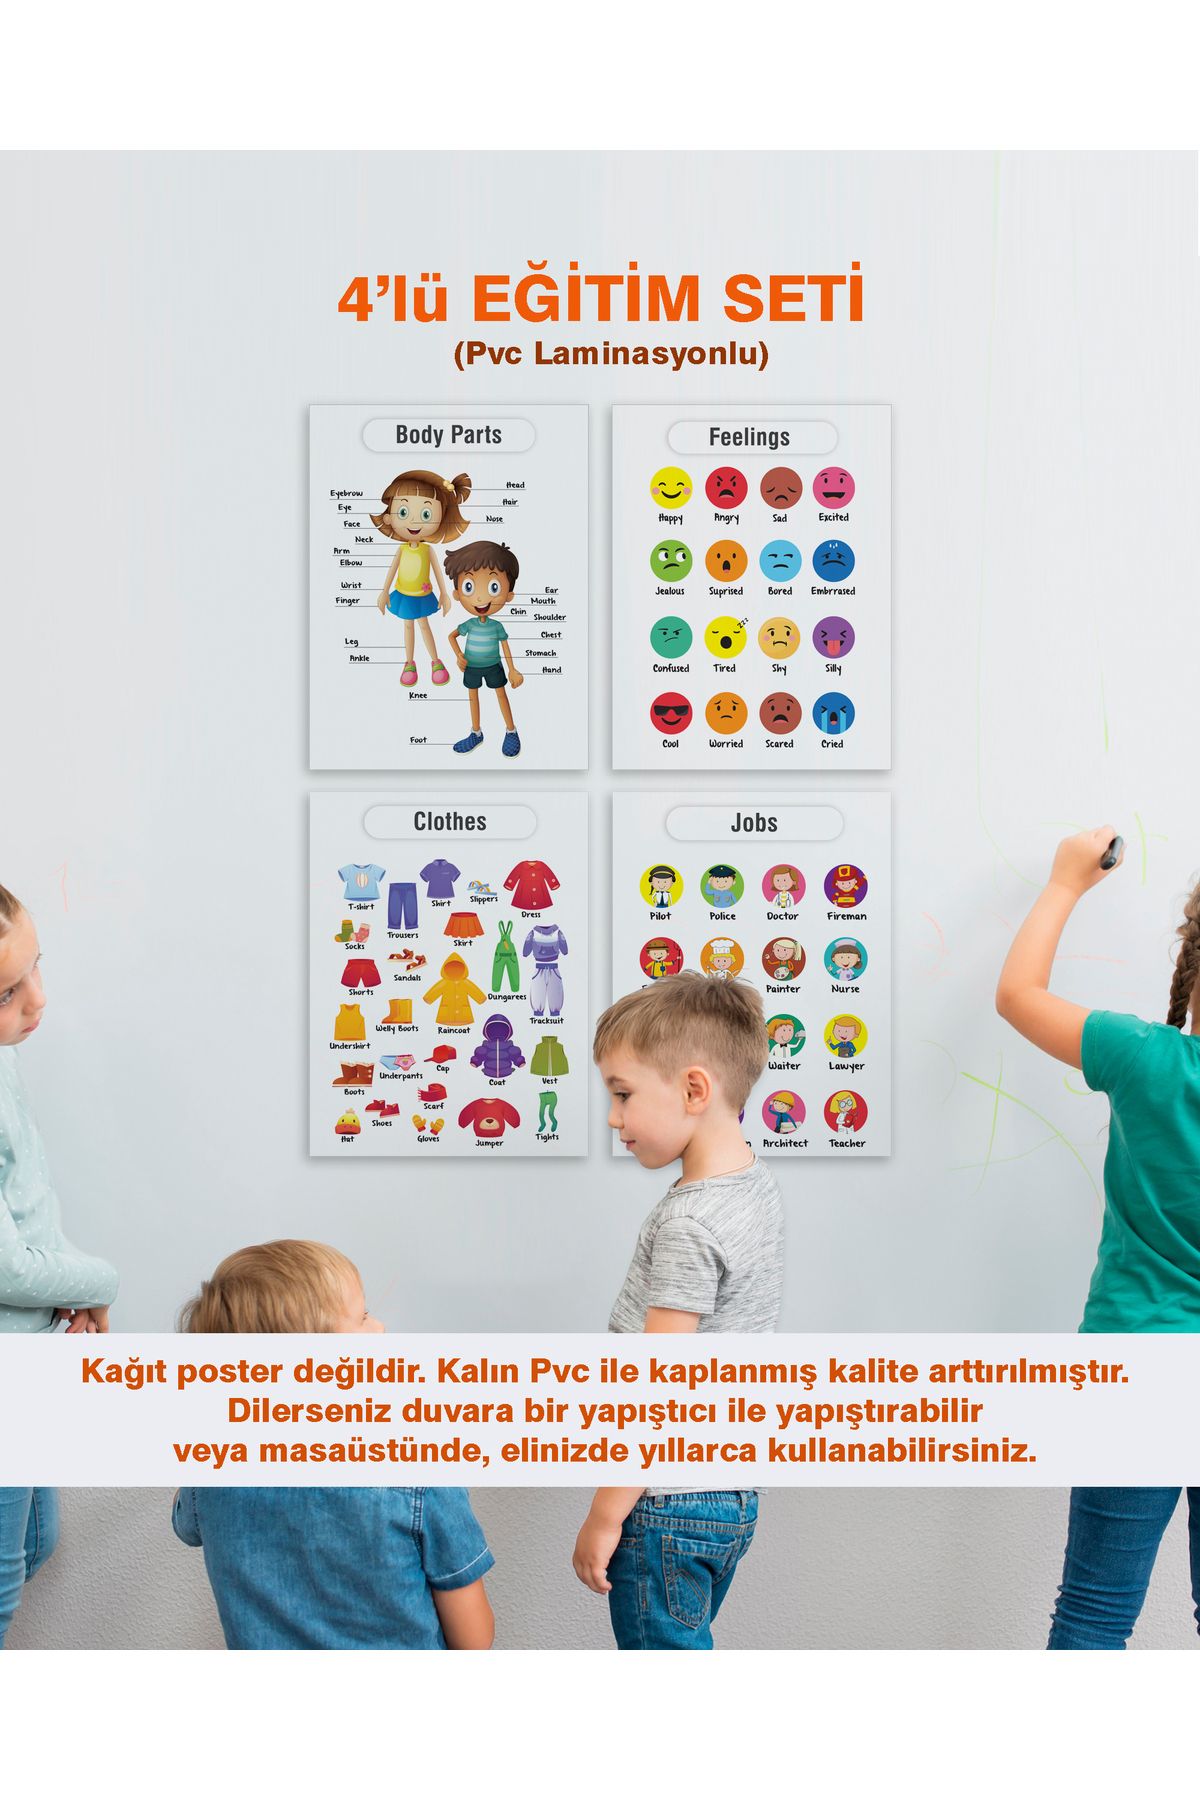 Ayışığı Dizayn Okul öncesi - İlköğretim Çocuk Poster Pvc Laminasyonlu İngilizce 4'lü Eğitim Seti 21x30 cm